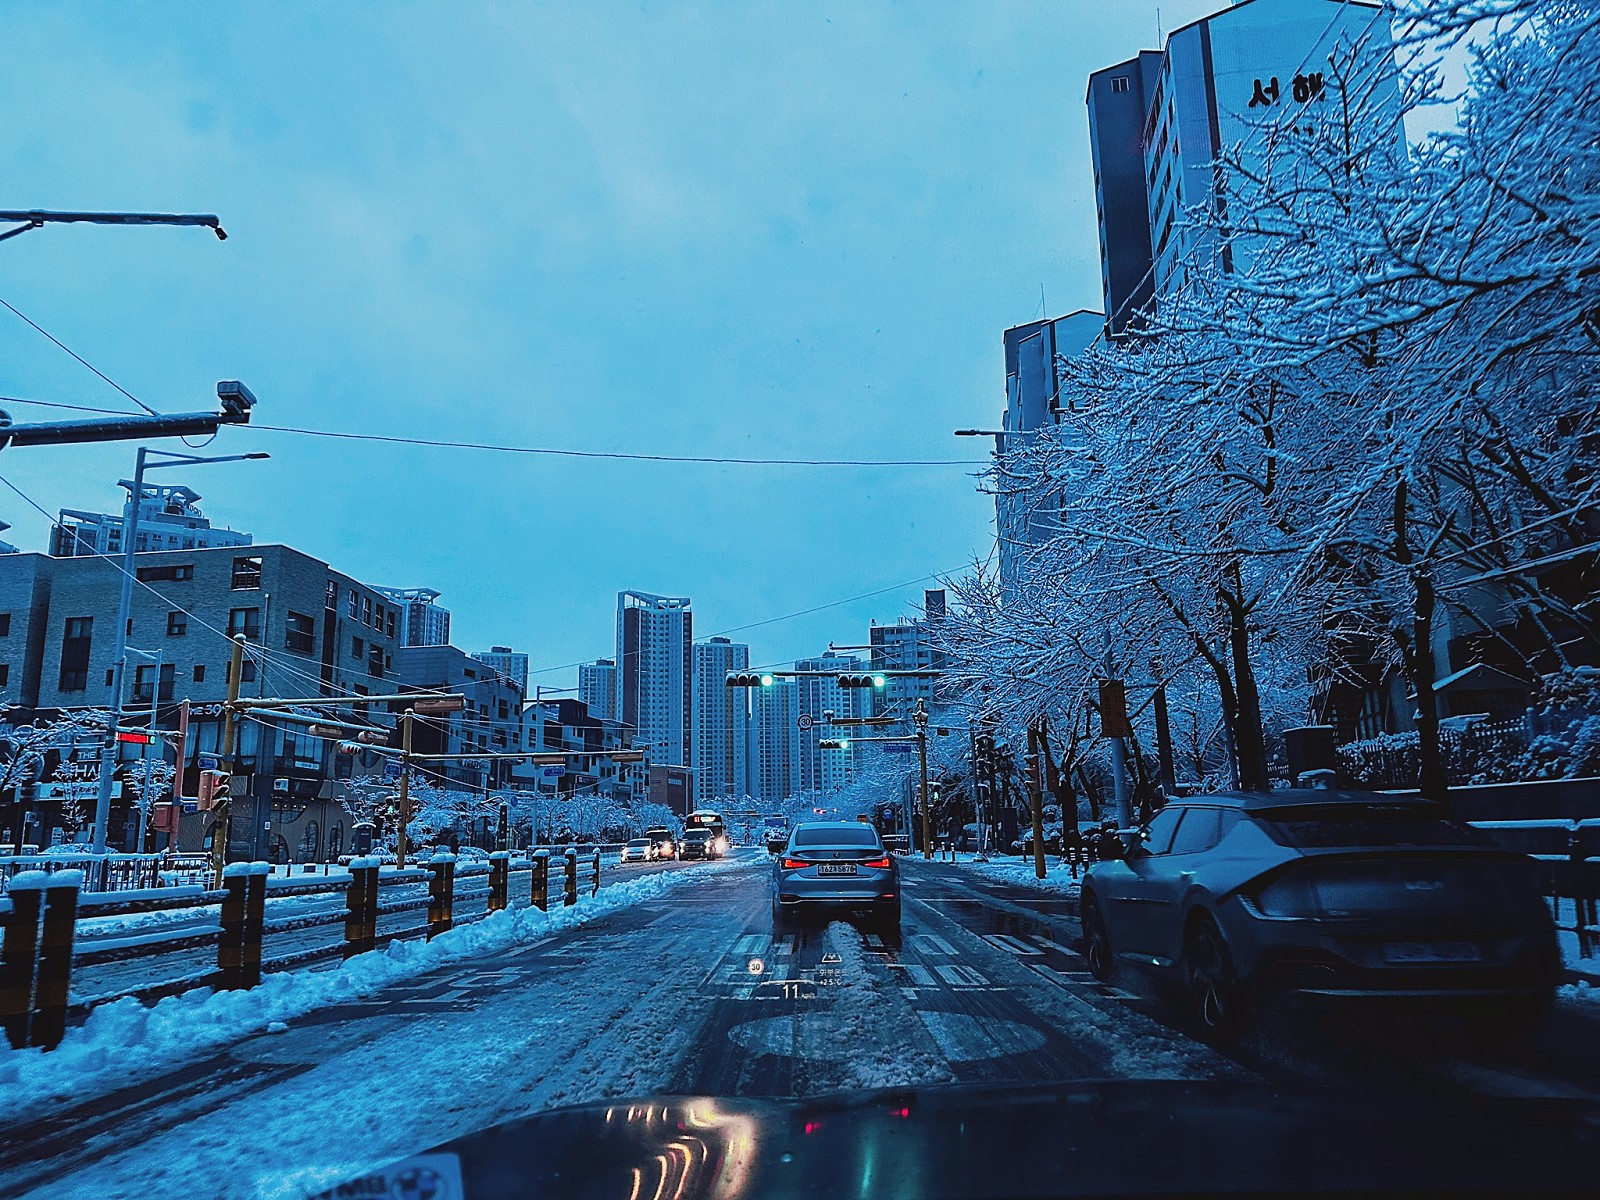 야외, 하늘, 겨울, 눈이(가) 표시된 사진

자동 생성된 설명